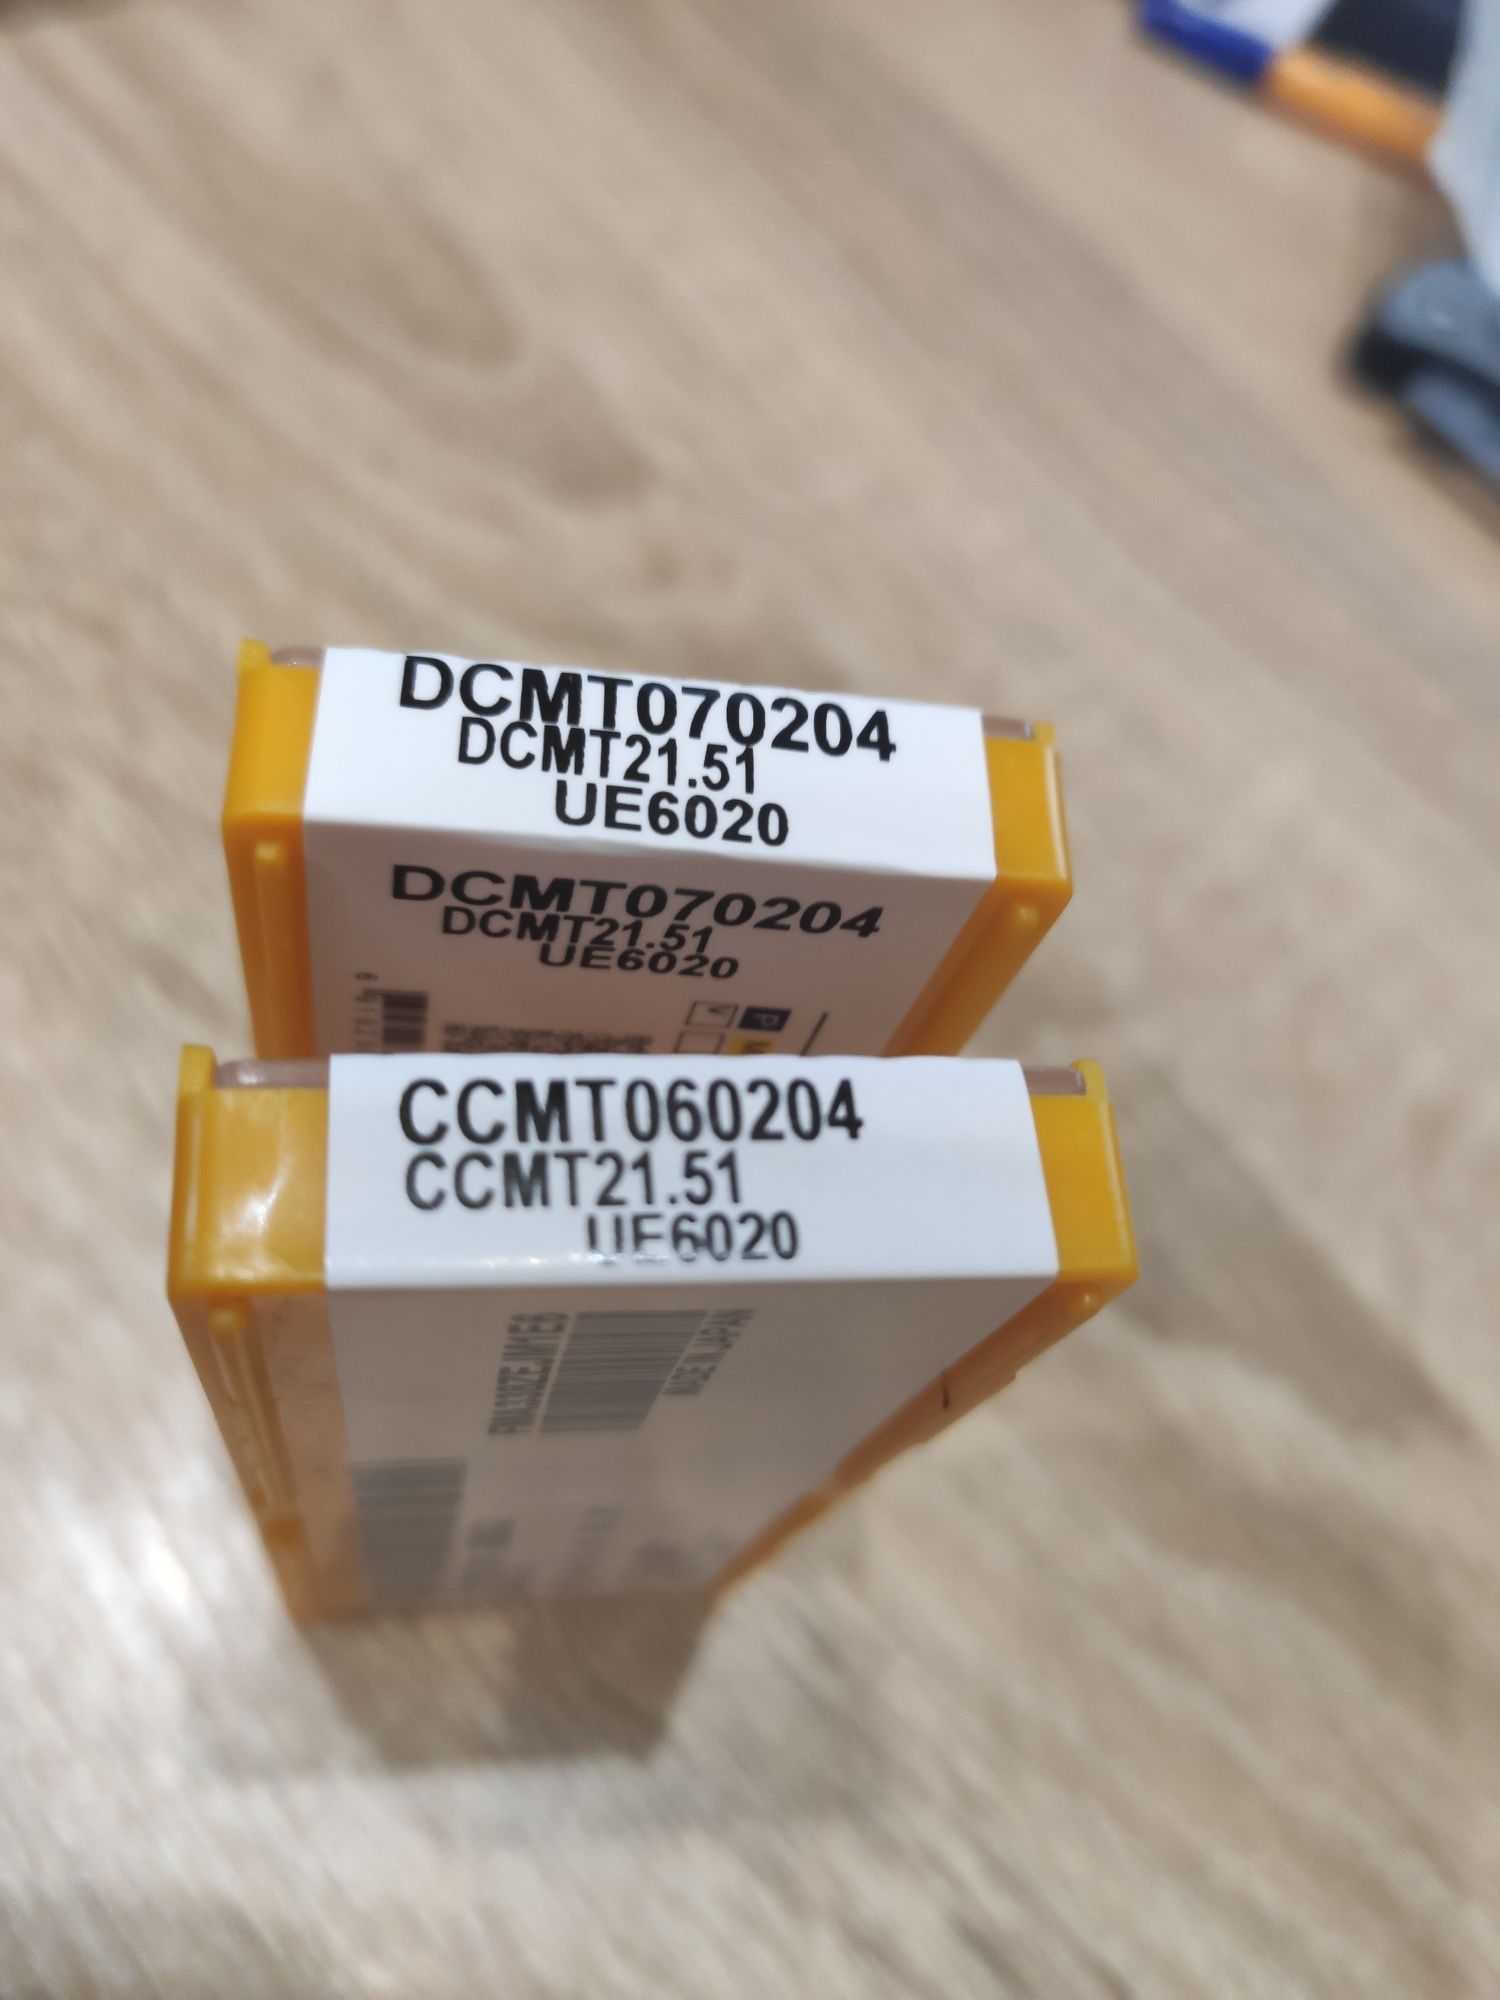 Пластини токарні з твердого сплаву  CCMT060204 (ромб), DCMT070204